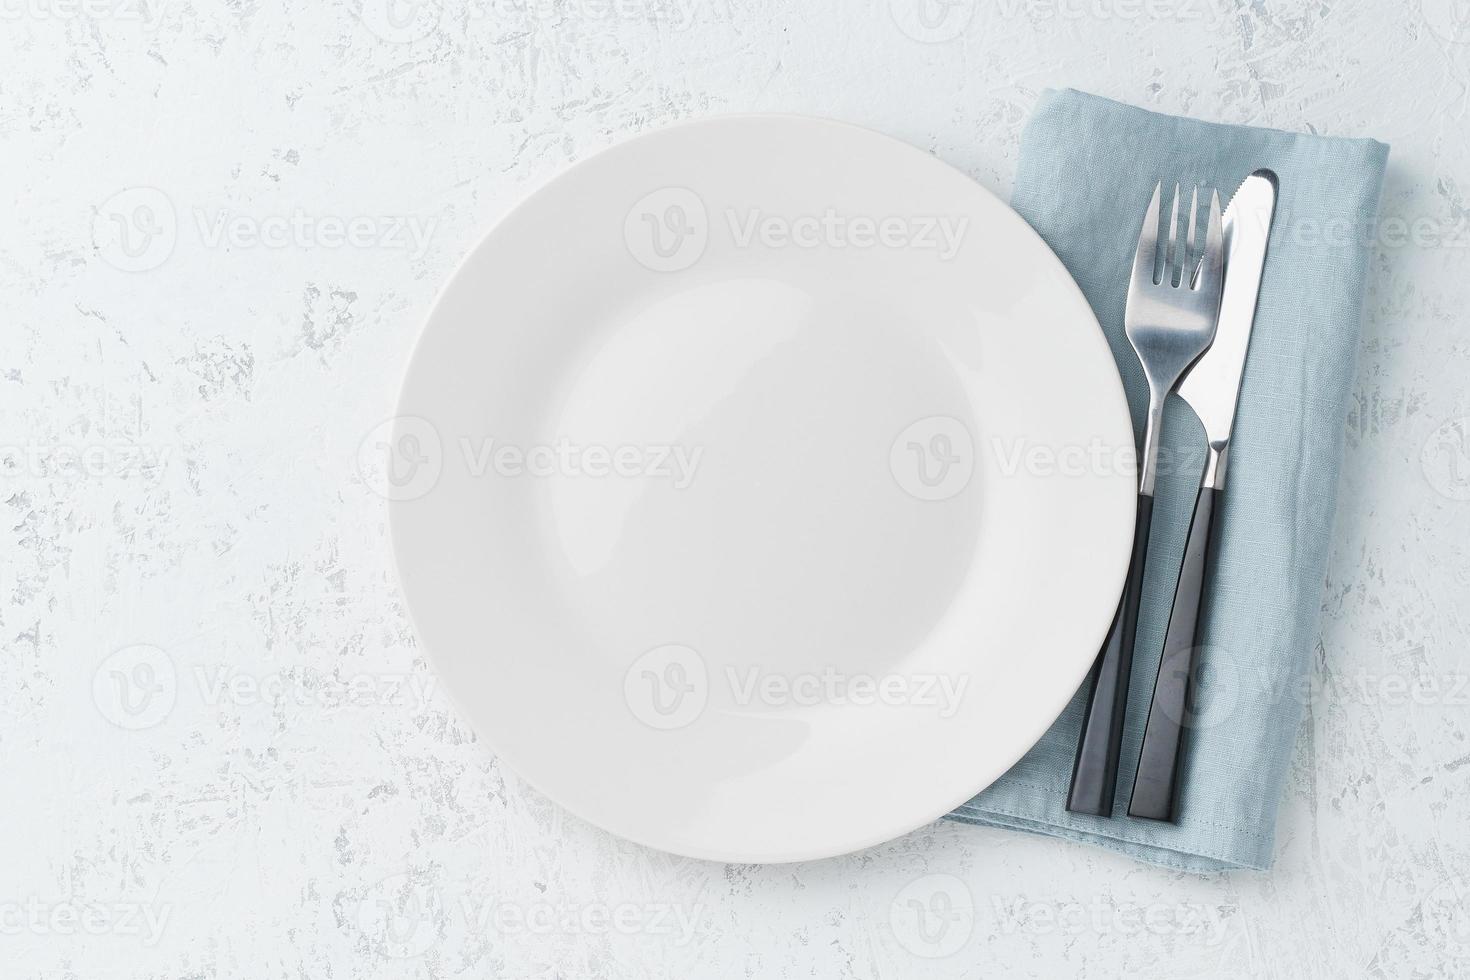 Limpie el plato blanco vacío, el tenedor y el cuchillo en la mesa de piedra blanca, copie el espacio, maqueta, vista superior. foto